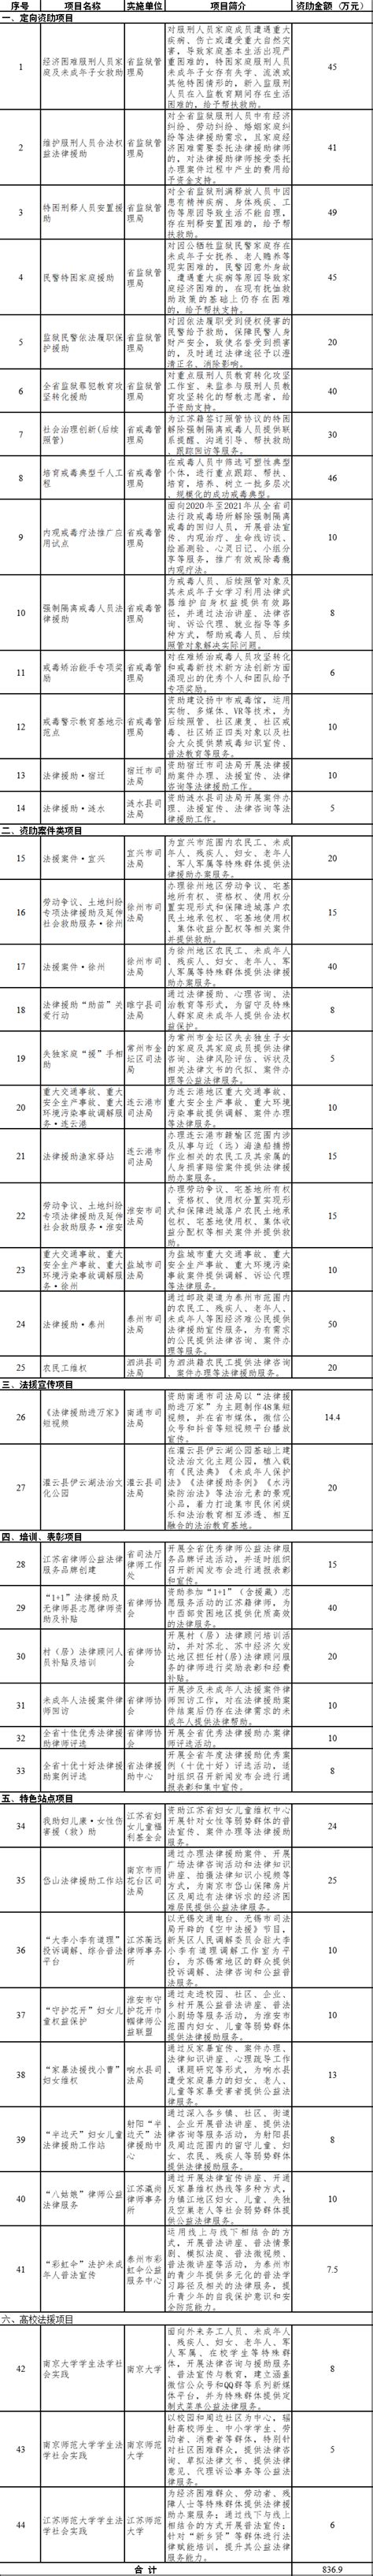 江苏省法律援助基金会2021年度第一批资助项目公示_法润江苏